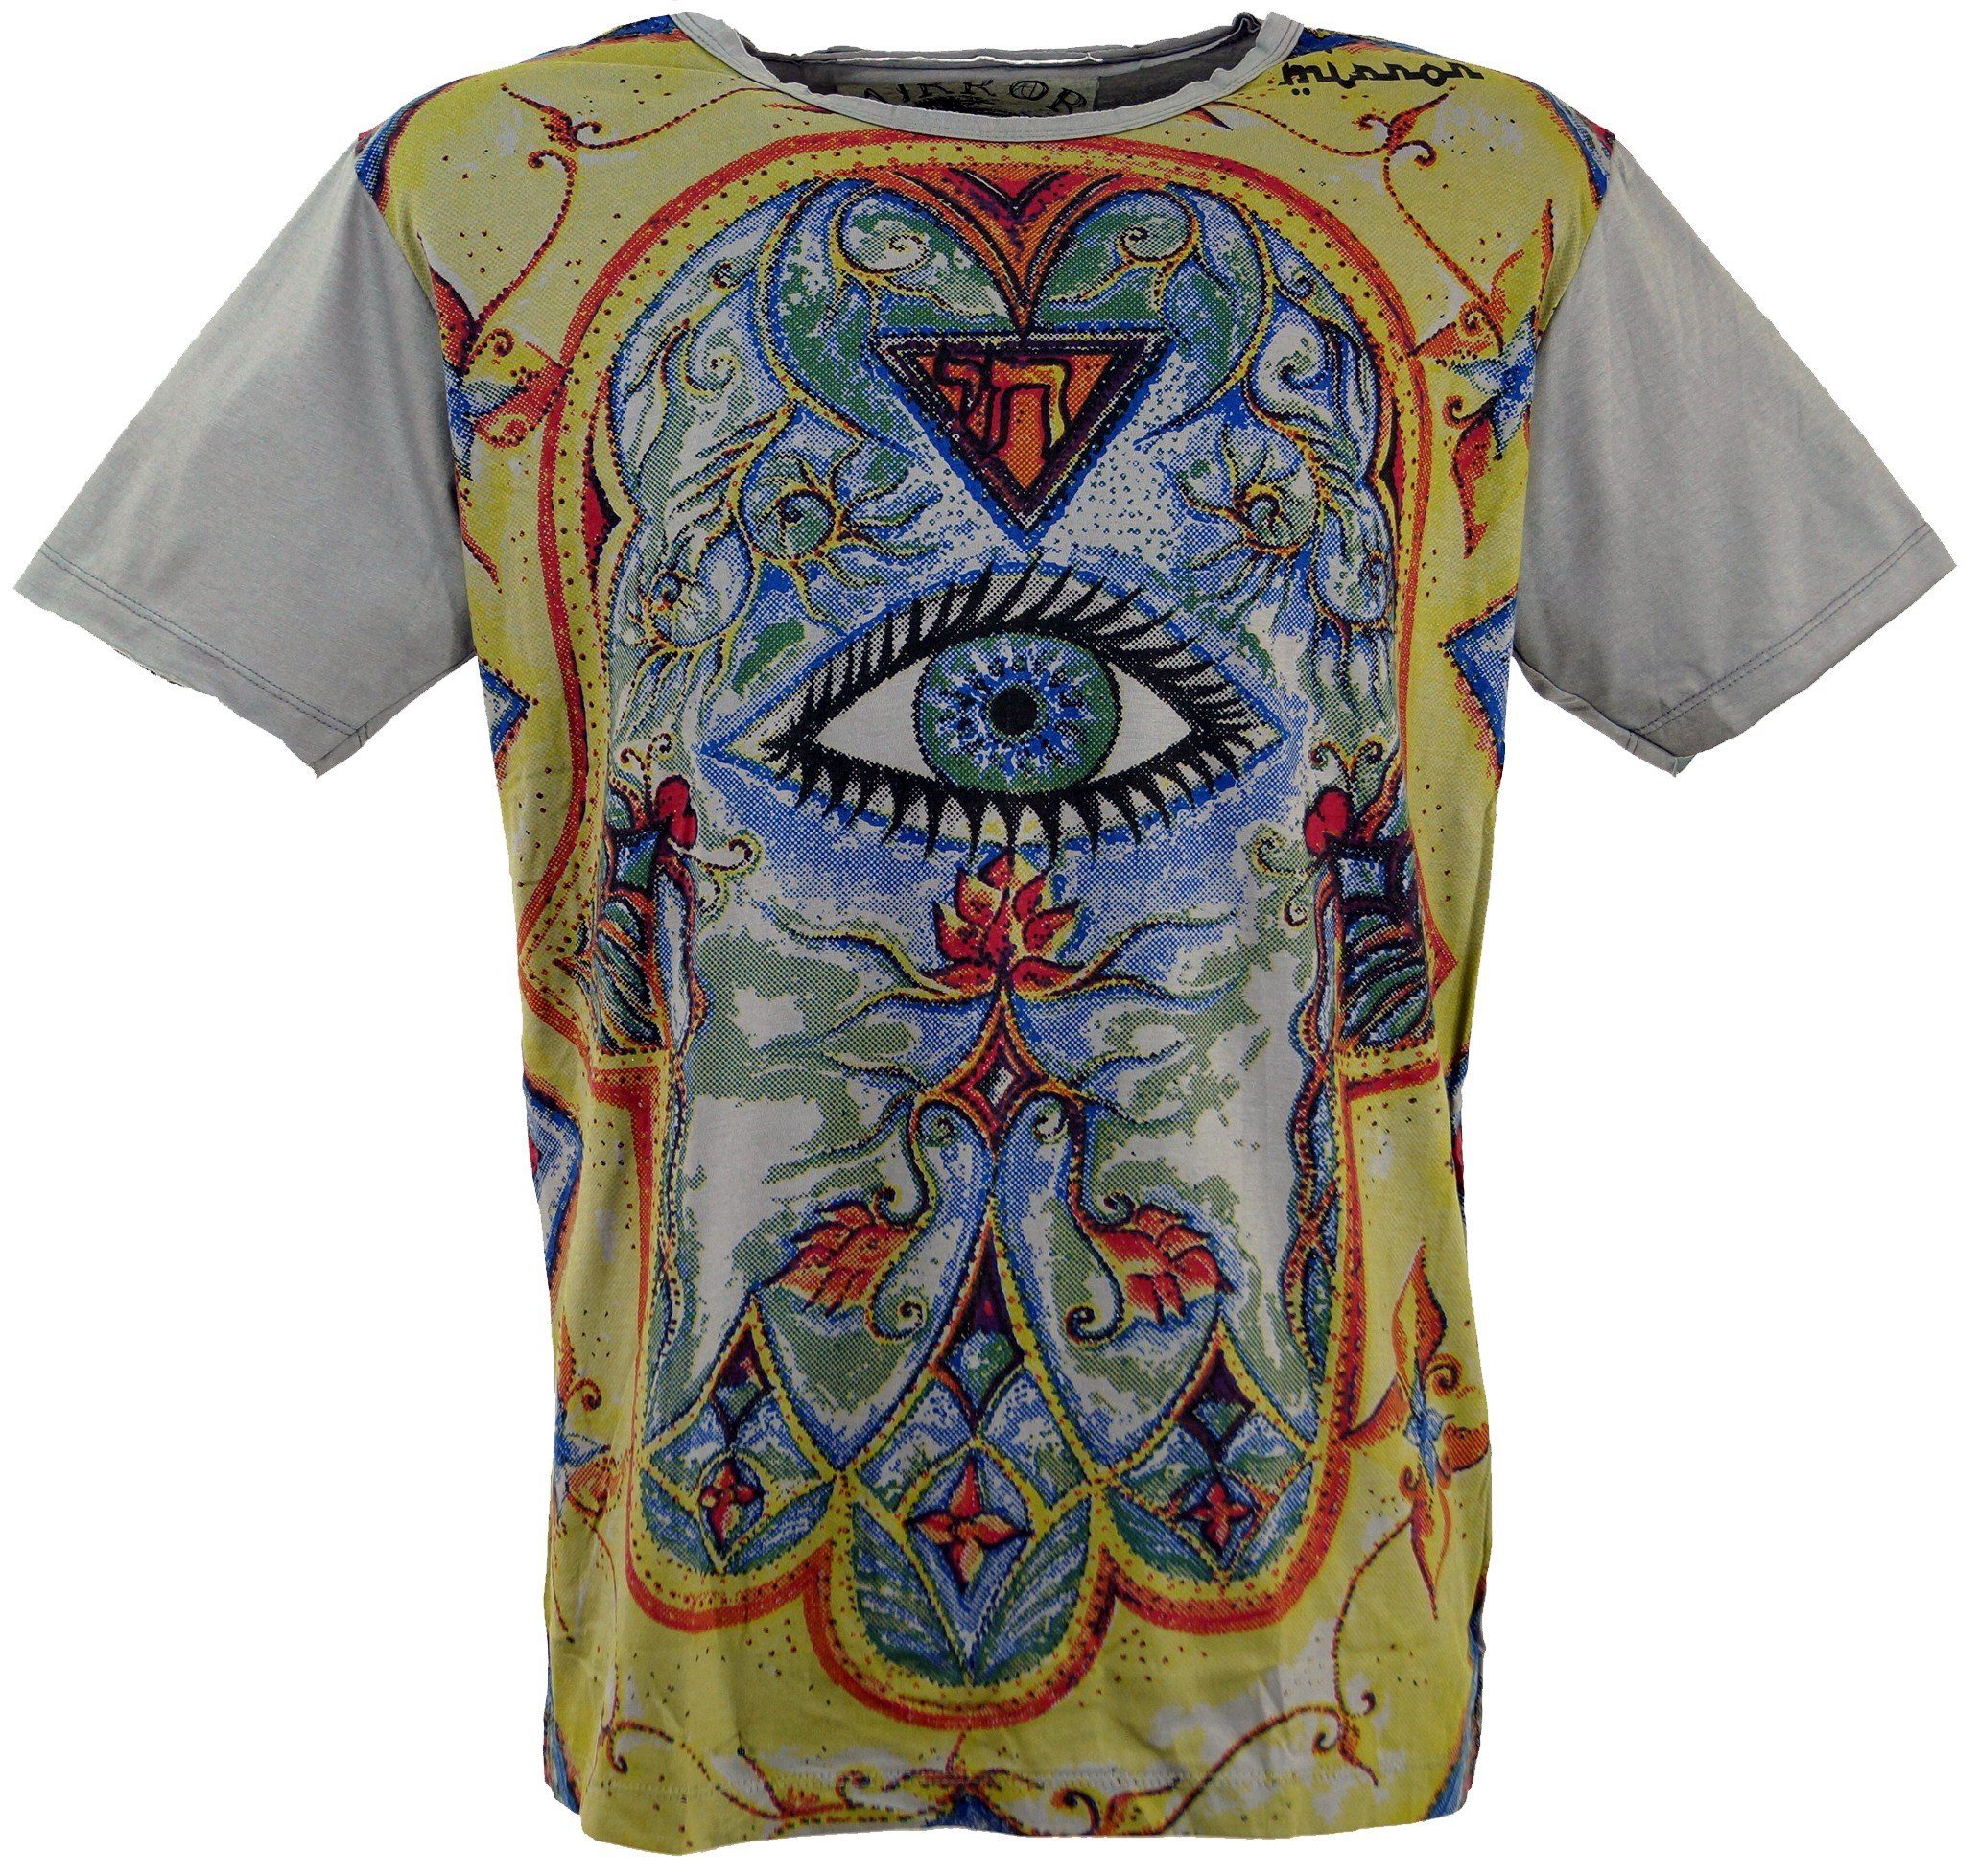 Guru-Shop T-Shirt Mirror T-Shirt - Style, Drittes grau alternative Festival, Auge Auge / grau Goa Drittes Bekleidung